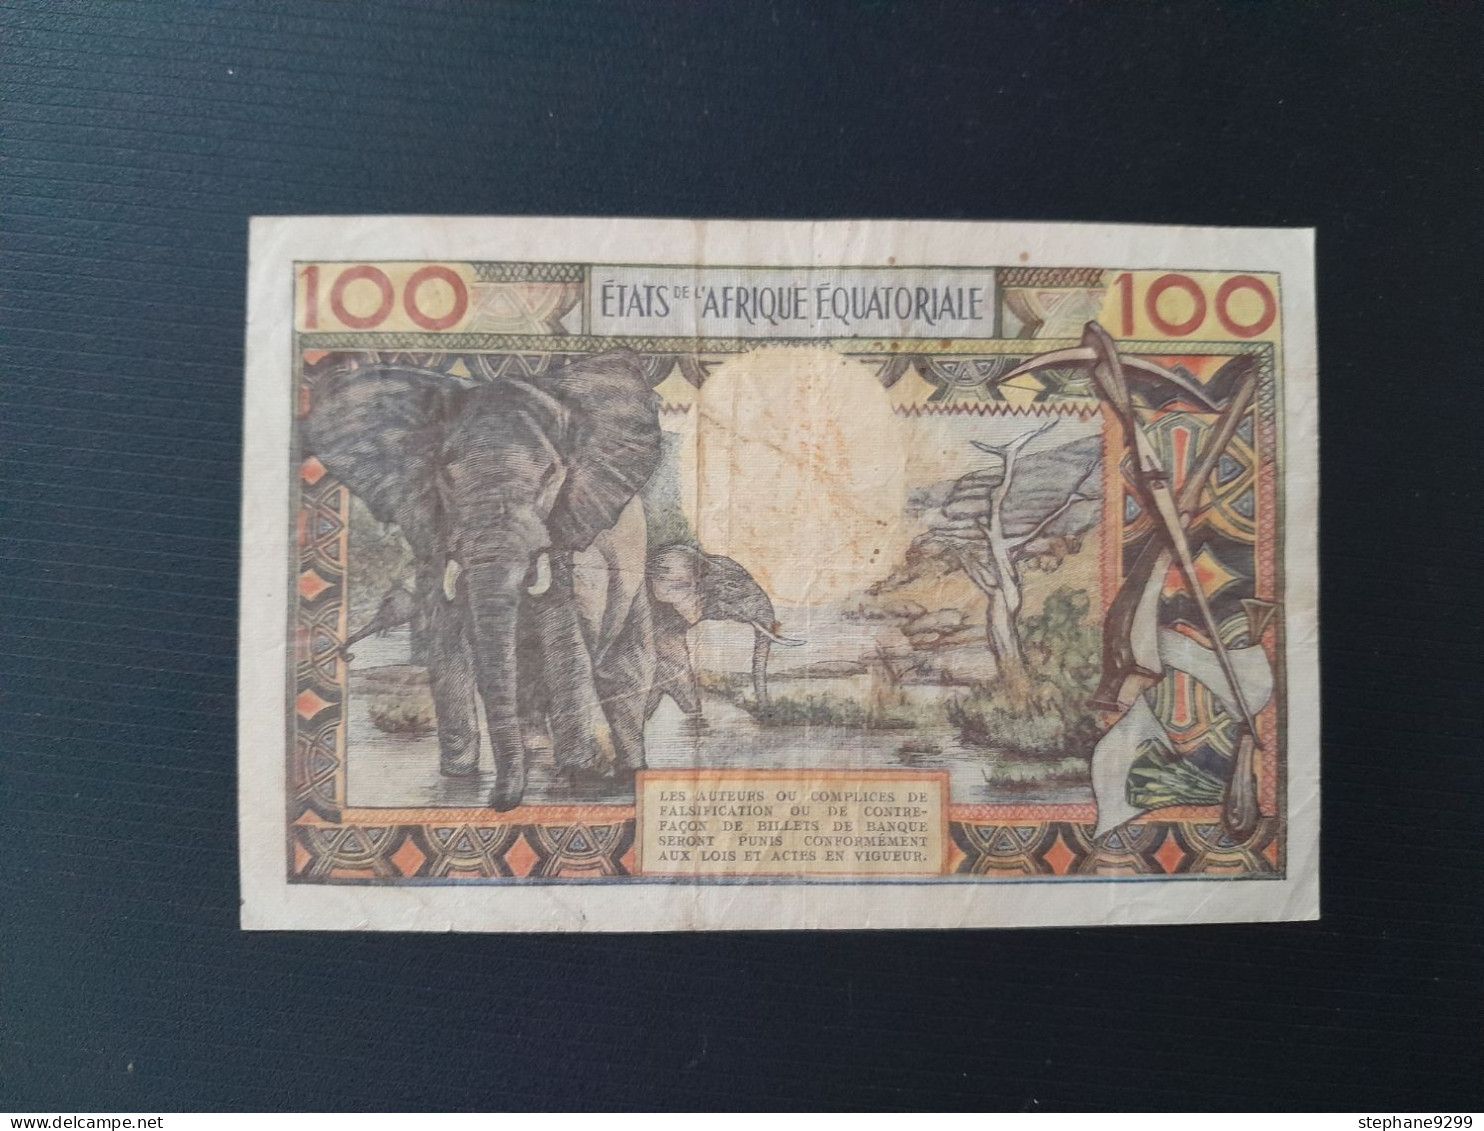 AFRIQUE EQUATORIALE 100 FRANCS 1963.LETTRE A.RARE - Andere - Afrika